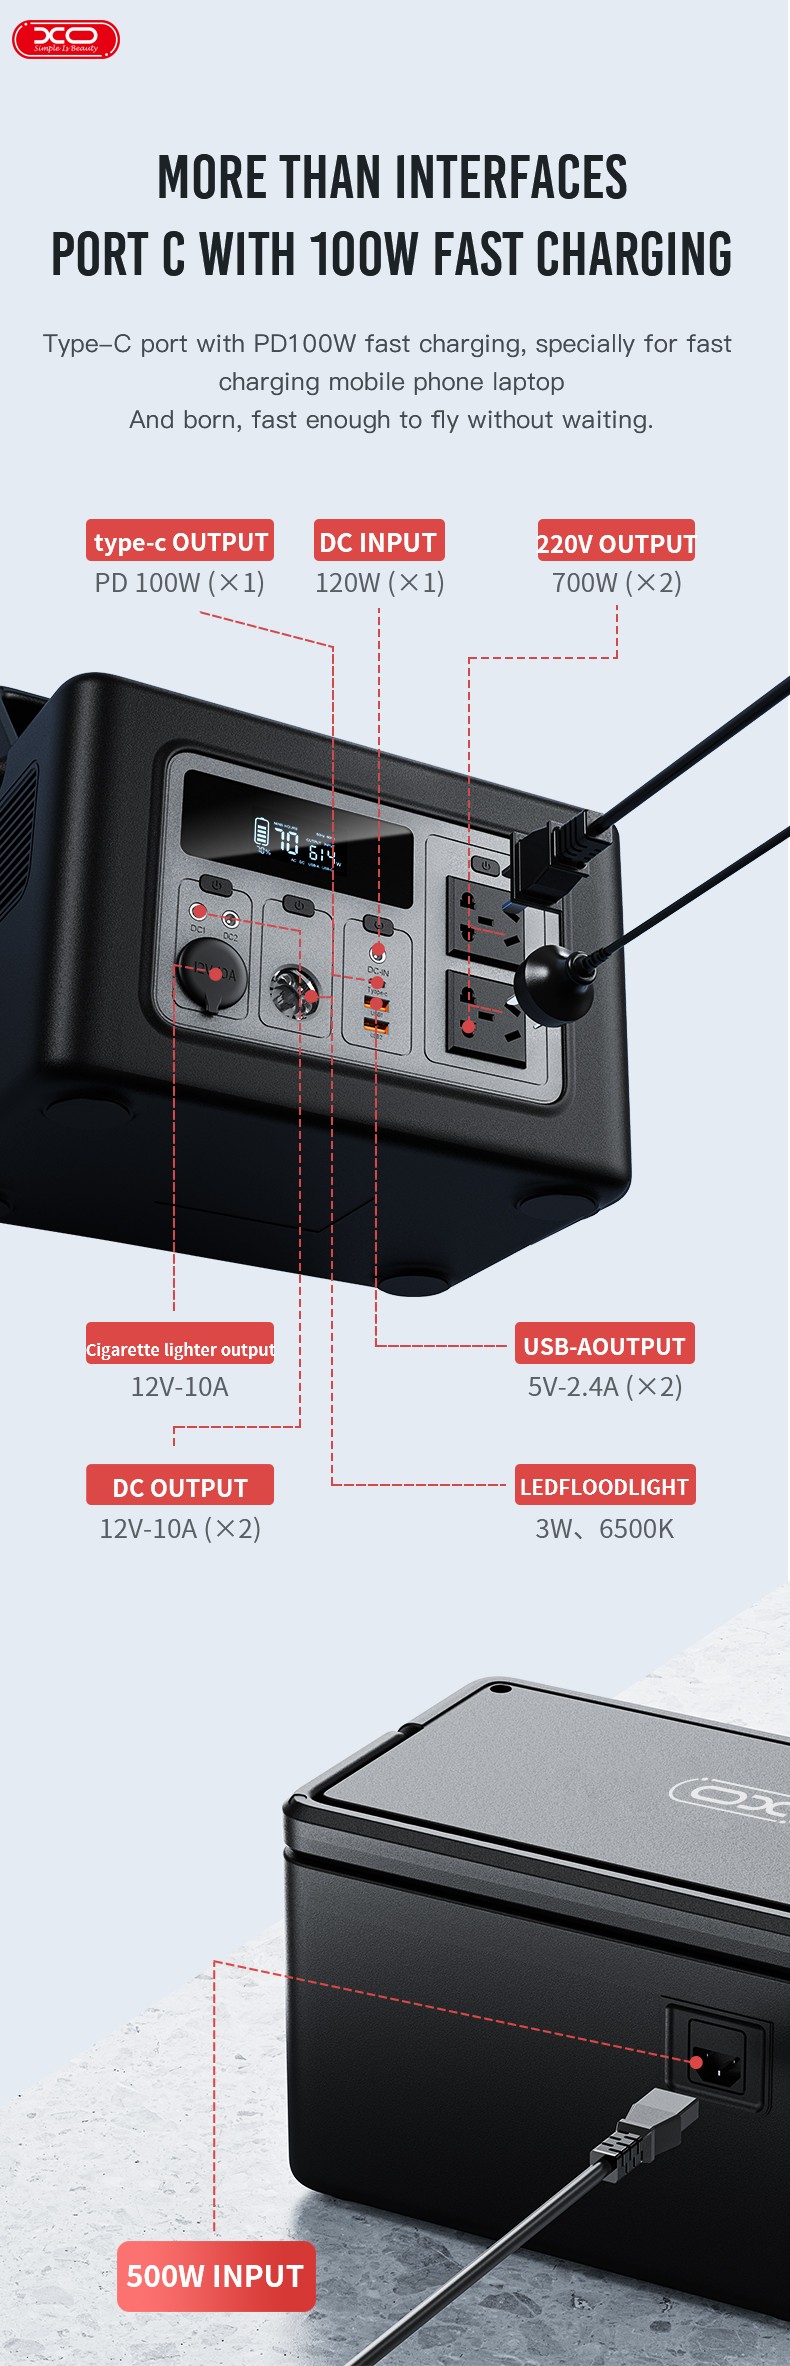 Портативная зарядная станция XO PSA-700 614Wh отзывы - изображения 5